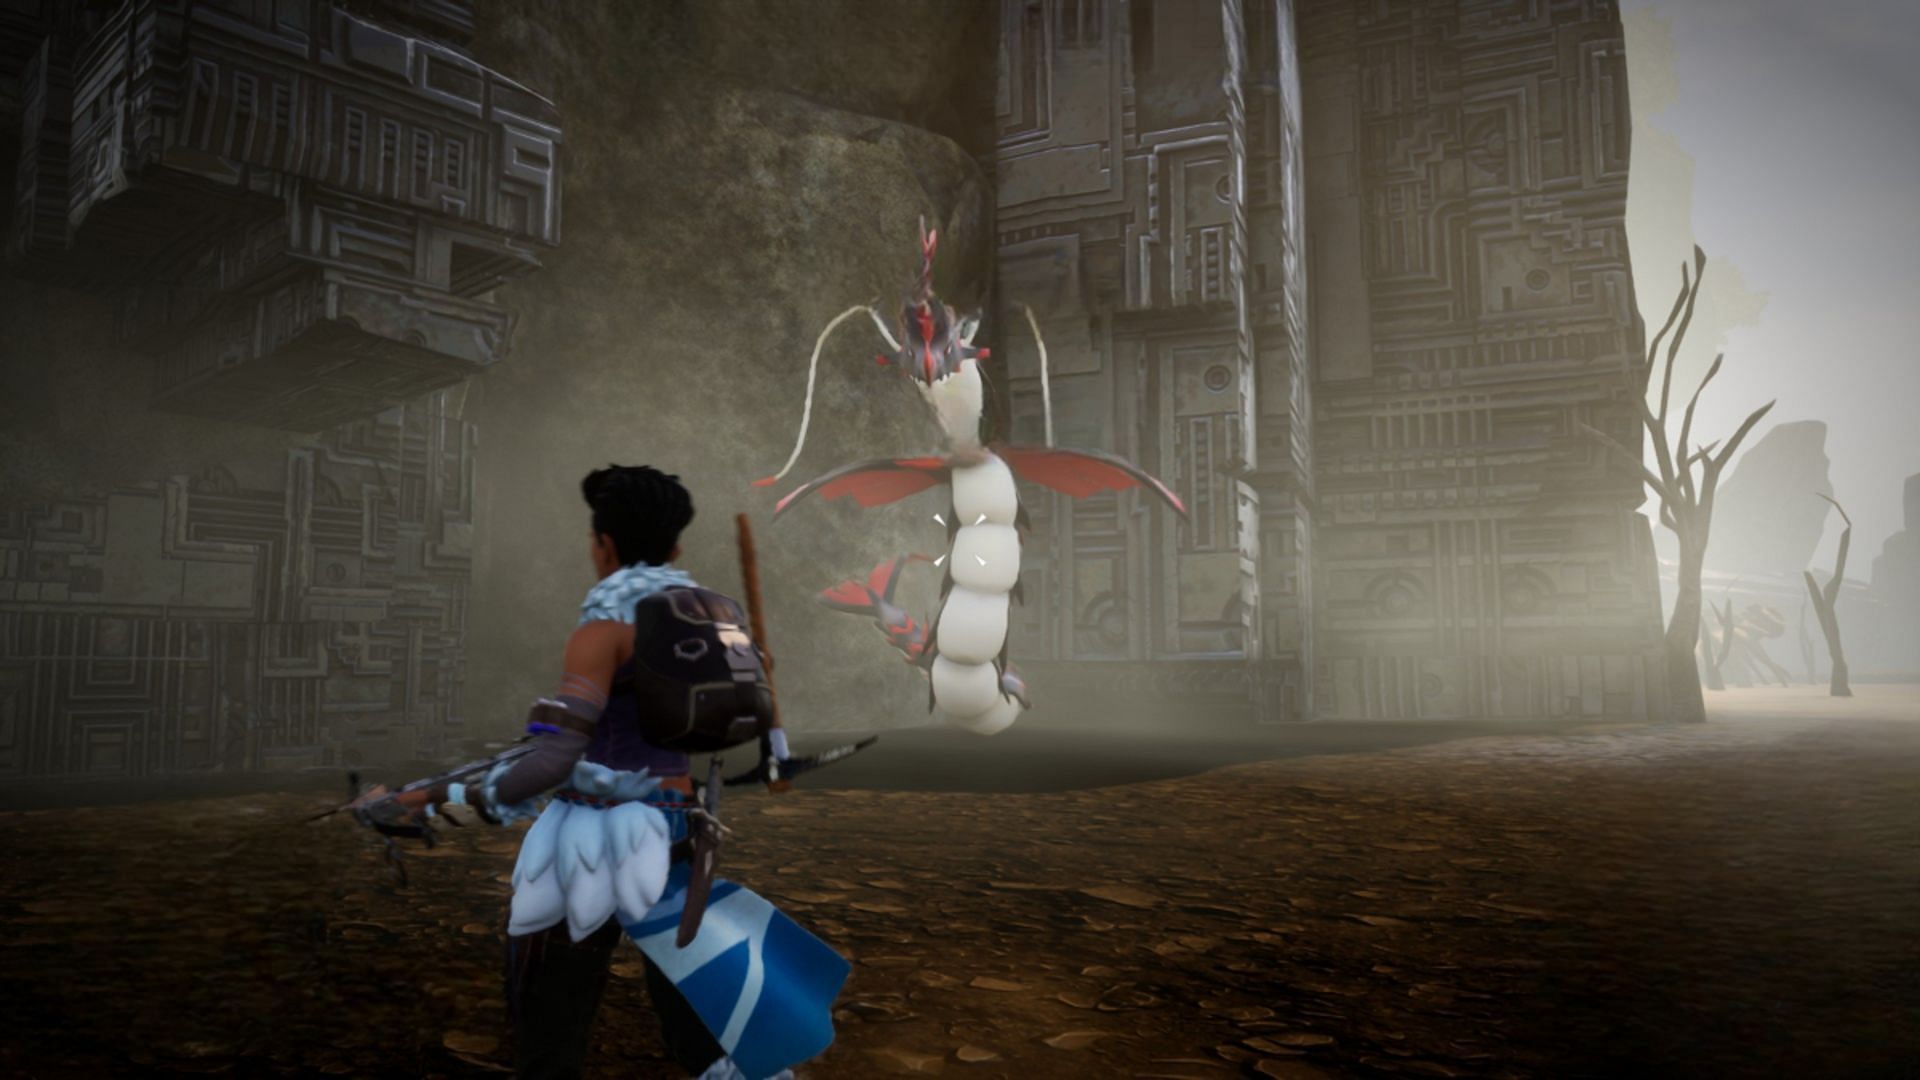 Jormuntide Ignis as seen in the game (Image via Pocketpair, Inc.)